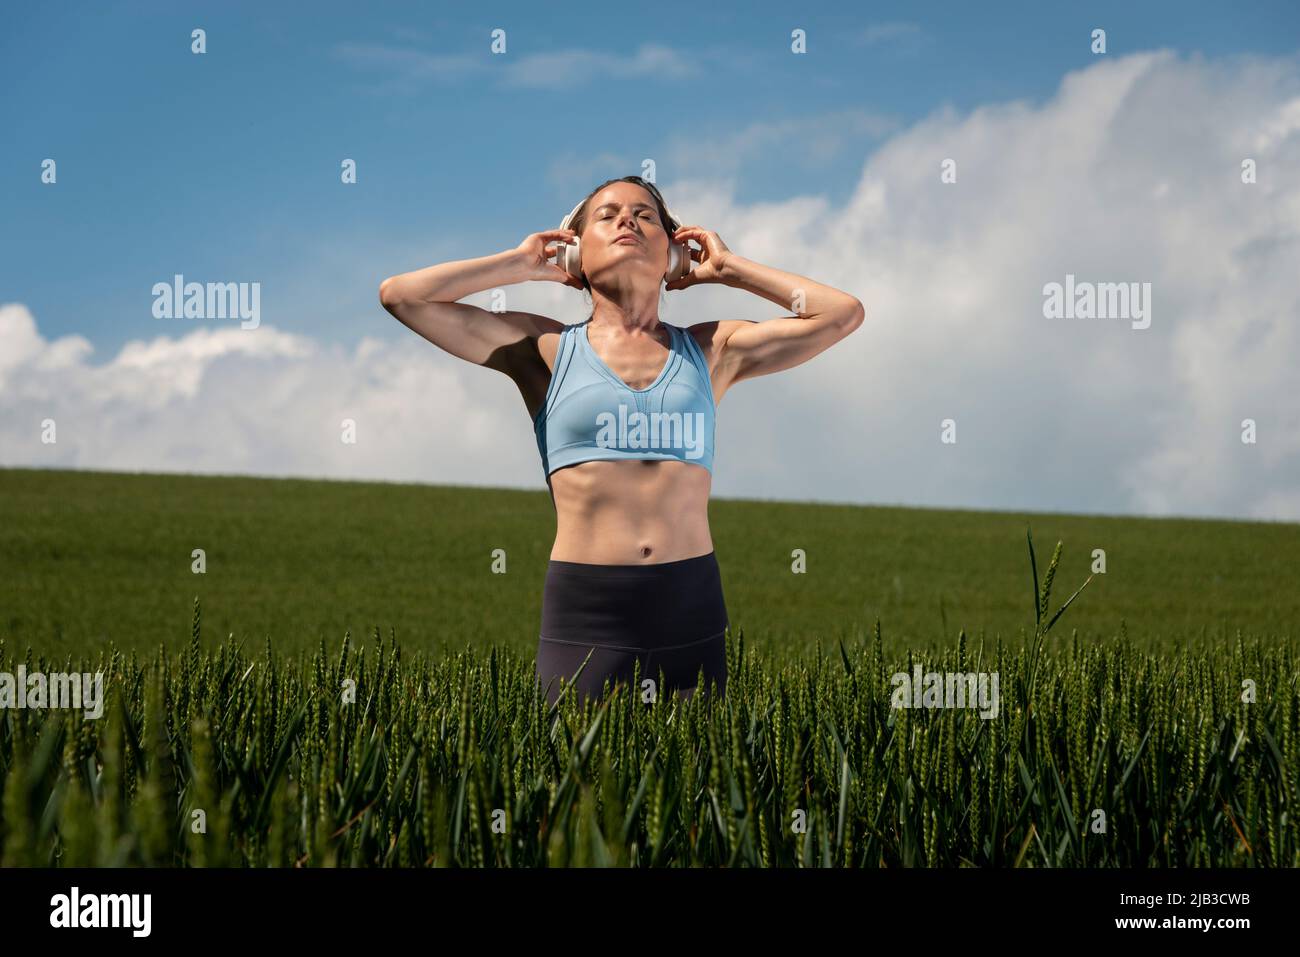 Eine sportliche, frauenfähige Frau, die in einem grünen Feld steht und Kopfhörer trägt, um Musik zu hören und sich von allem zu entfernen. Stockfoto